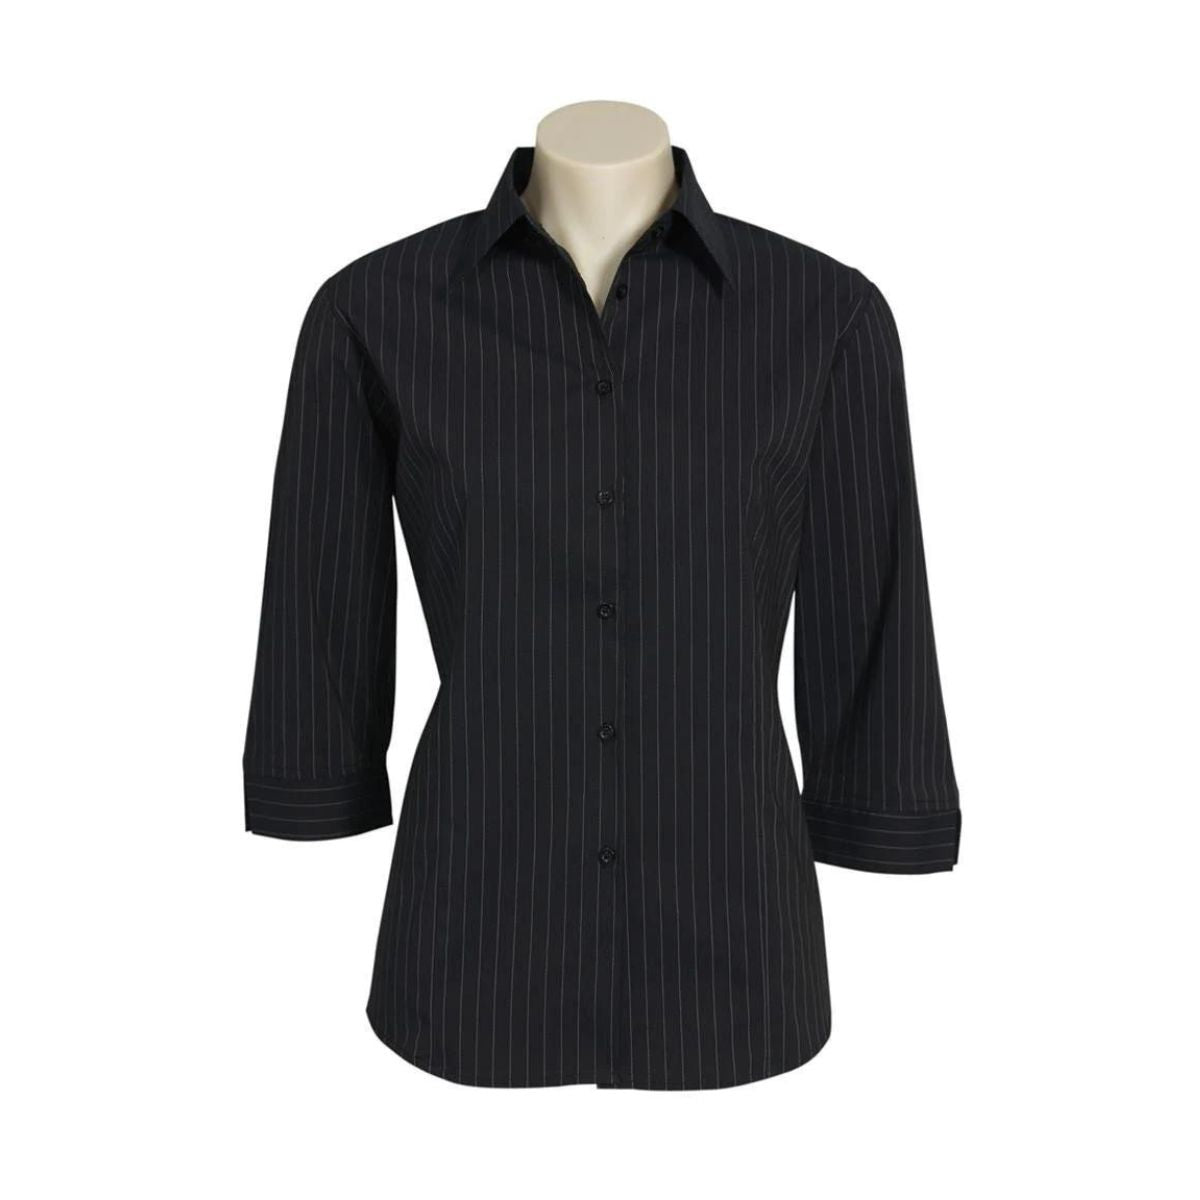 Biz Collection Women's Manhattan 3/4 Sleeve Shirt LB8425